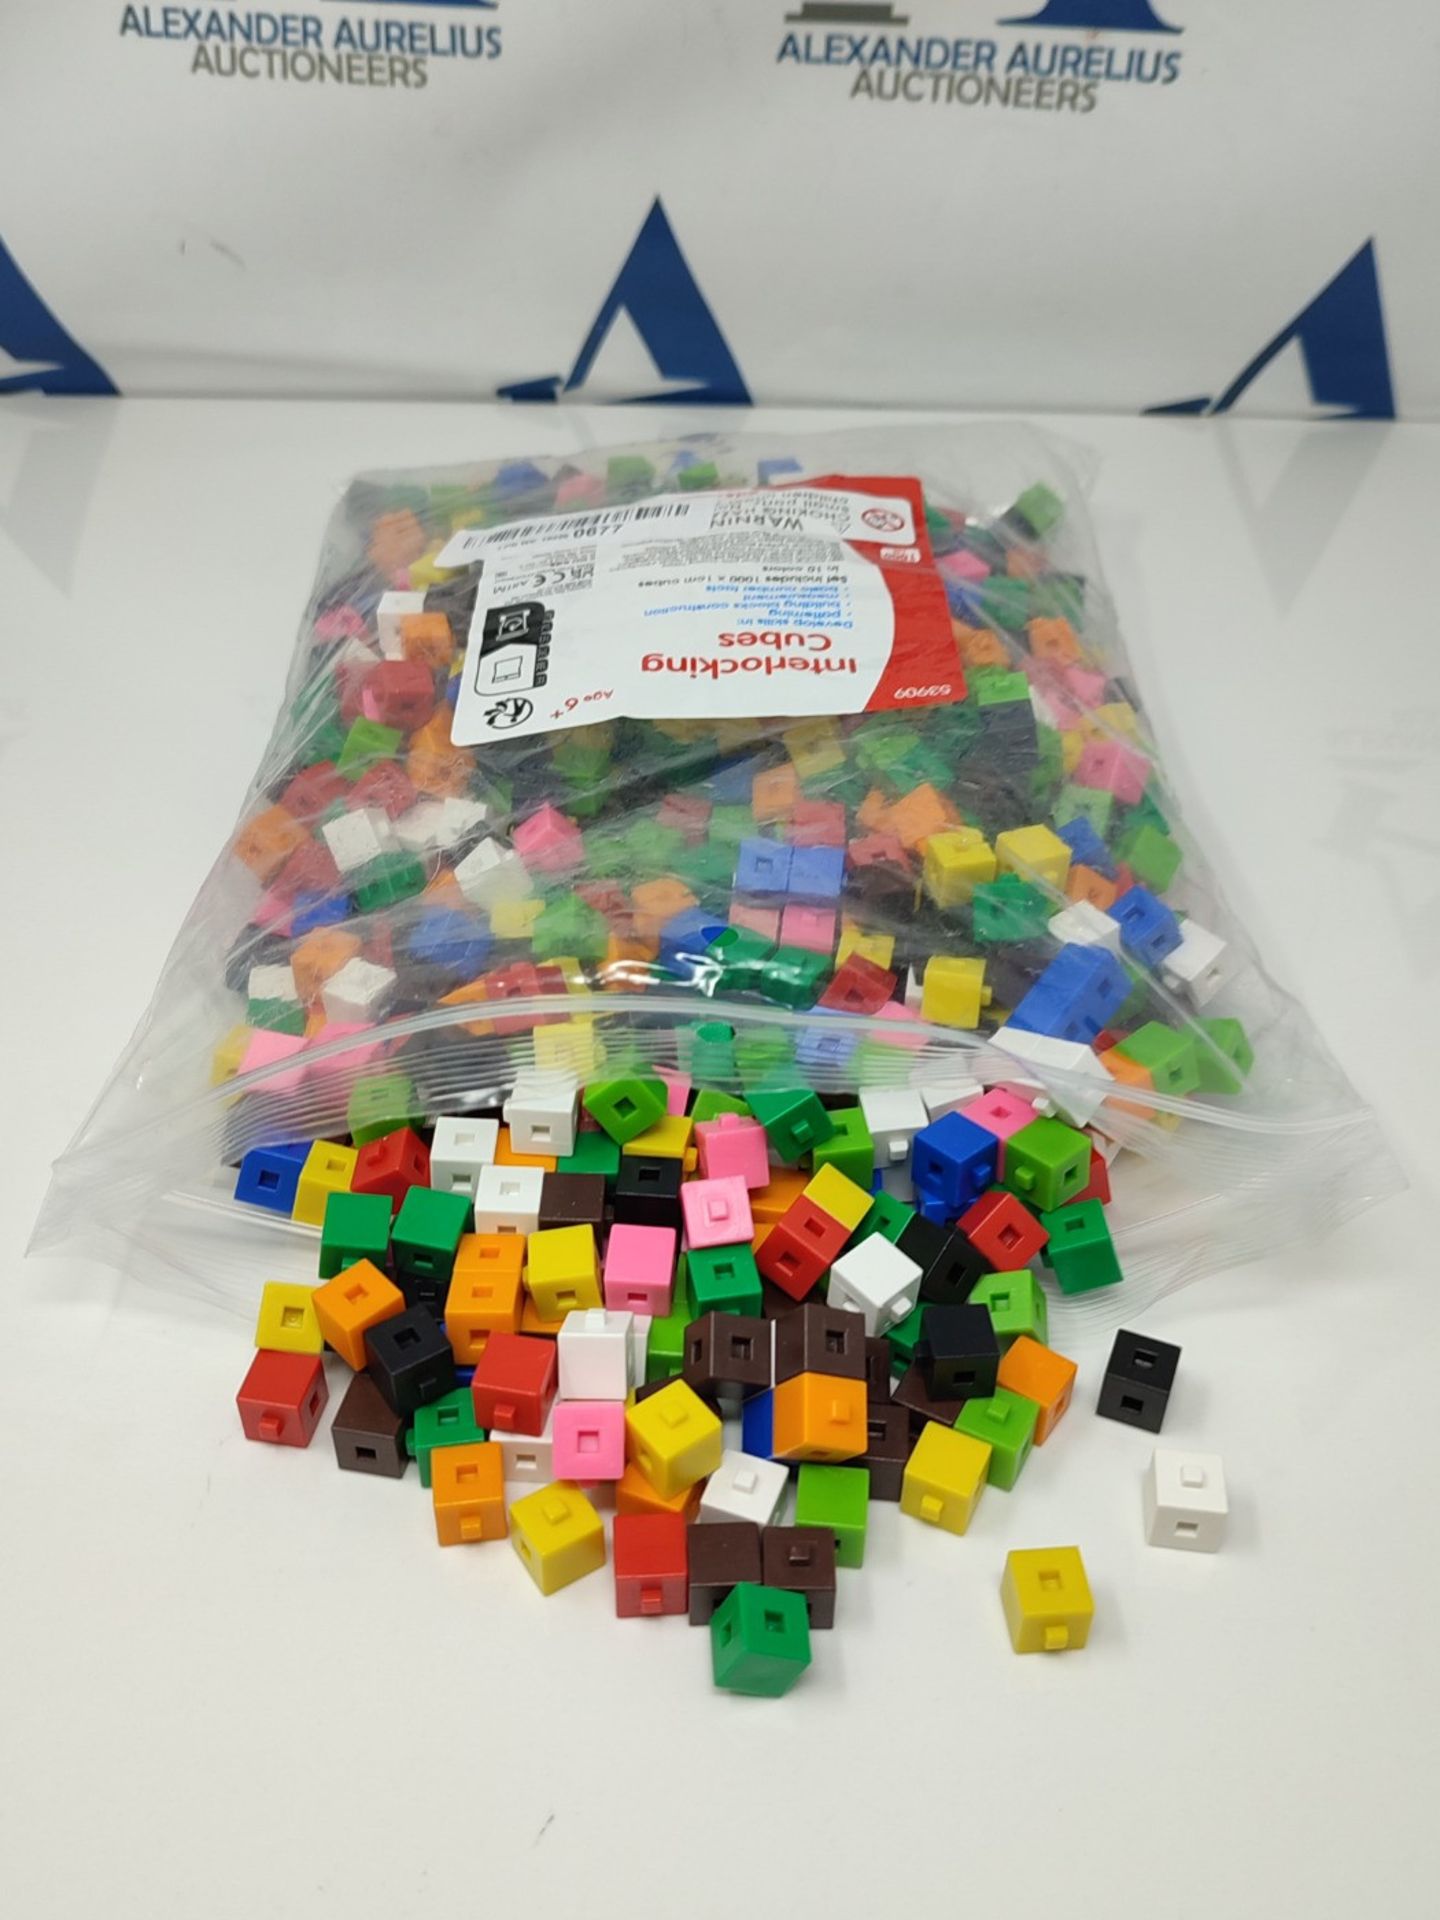 EDX Education 53909 Interlocking Cube, Set of 1000 x 1 cm cubes - Image 2 of 3